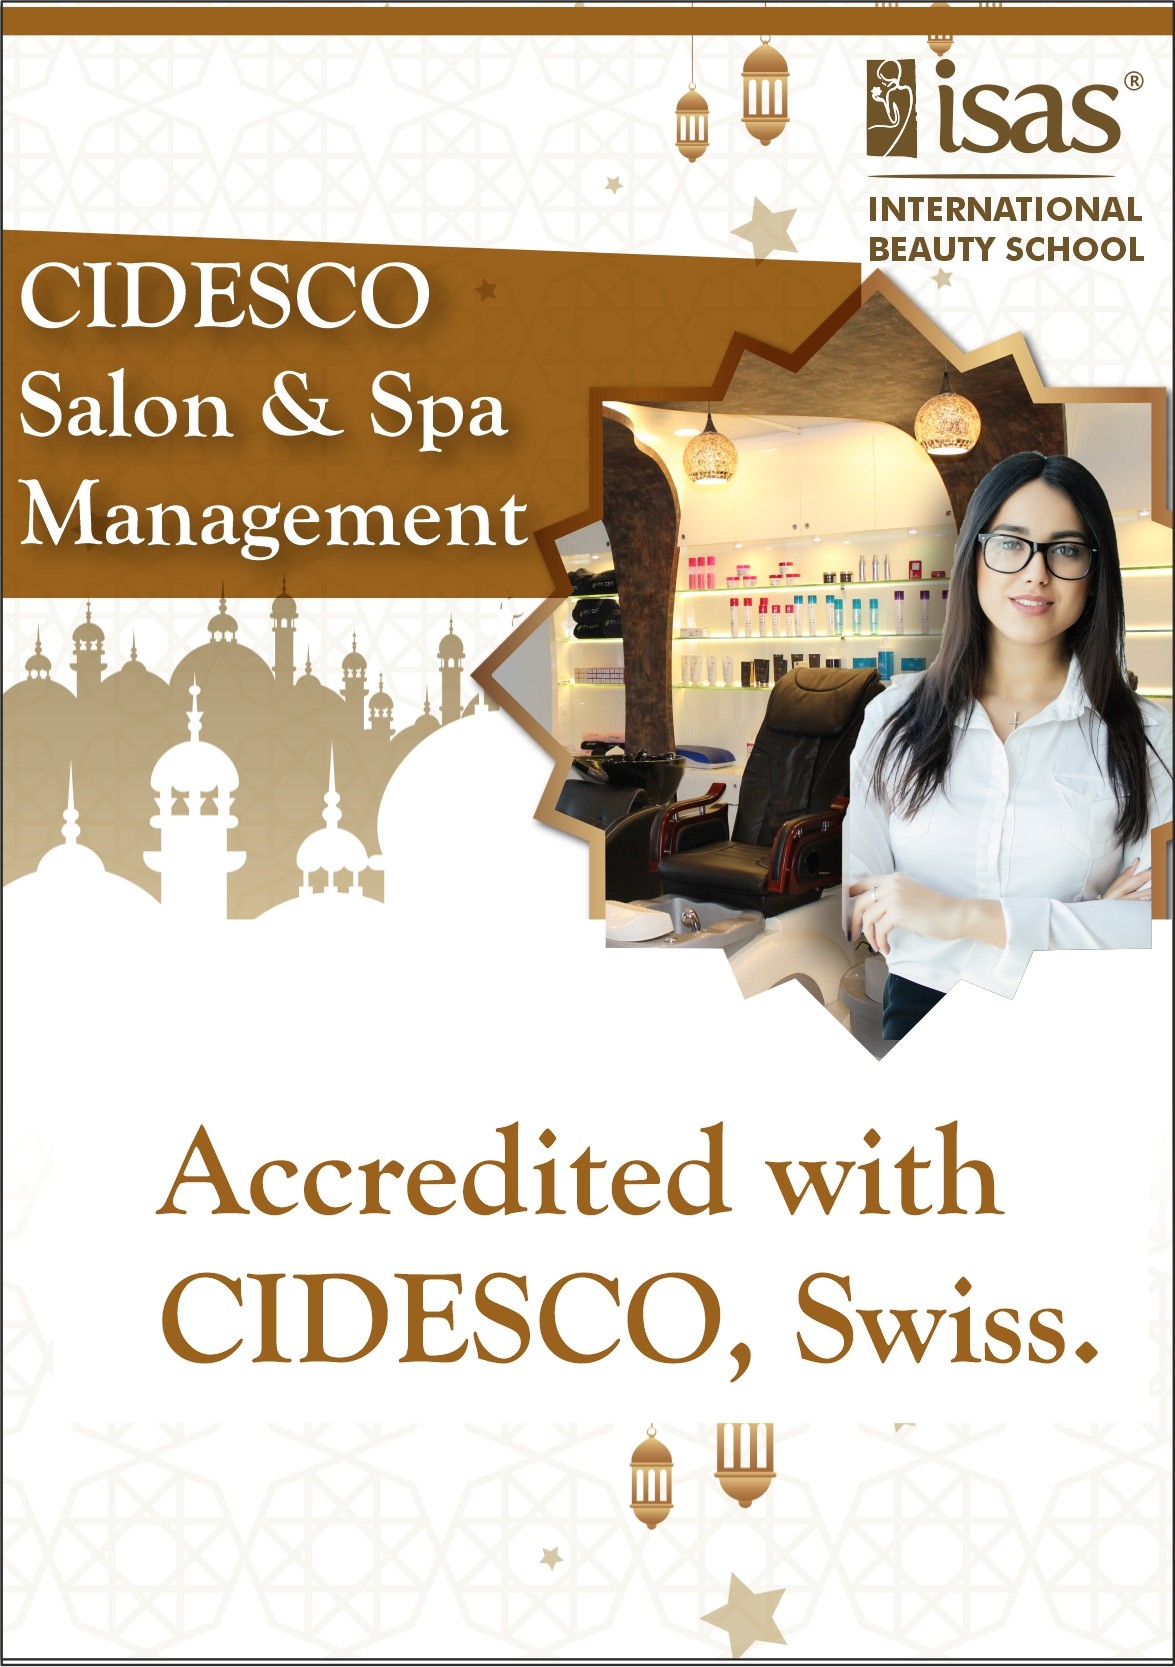 Cidesco Salon Spa & Management